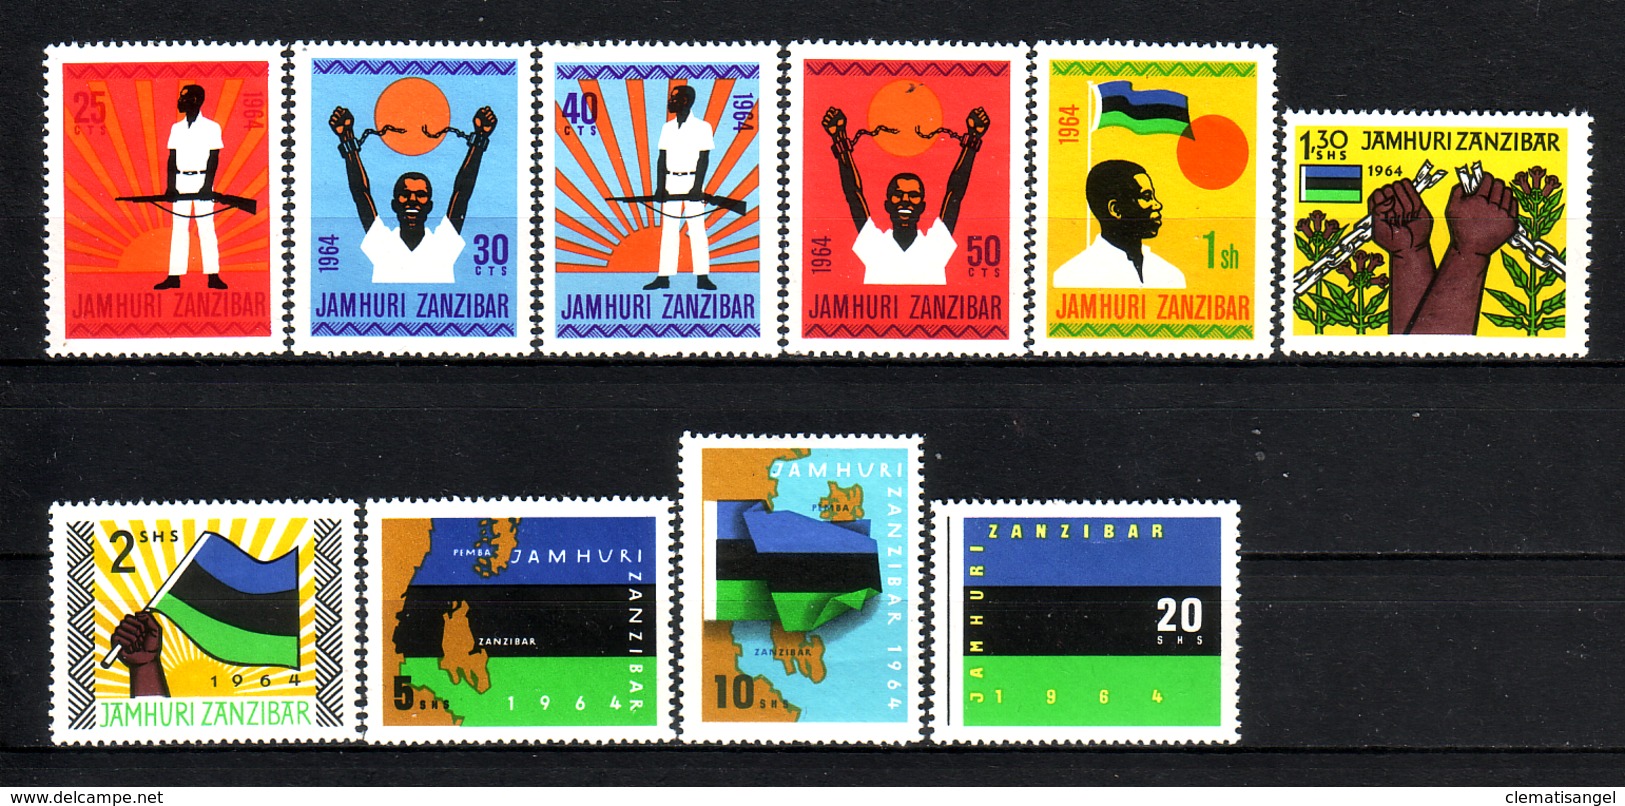 374o * ZANZIBAR * JAMHURI 1964 * POSTFRISCH **!! - Zanzibar (1963-1968)